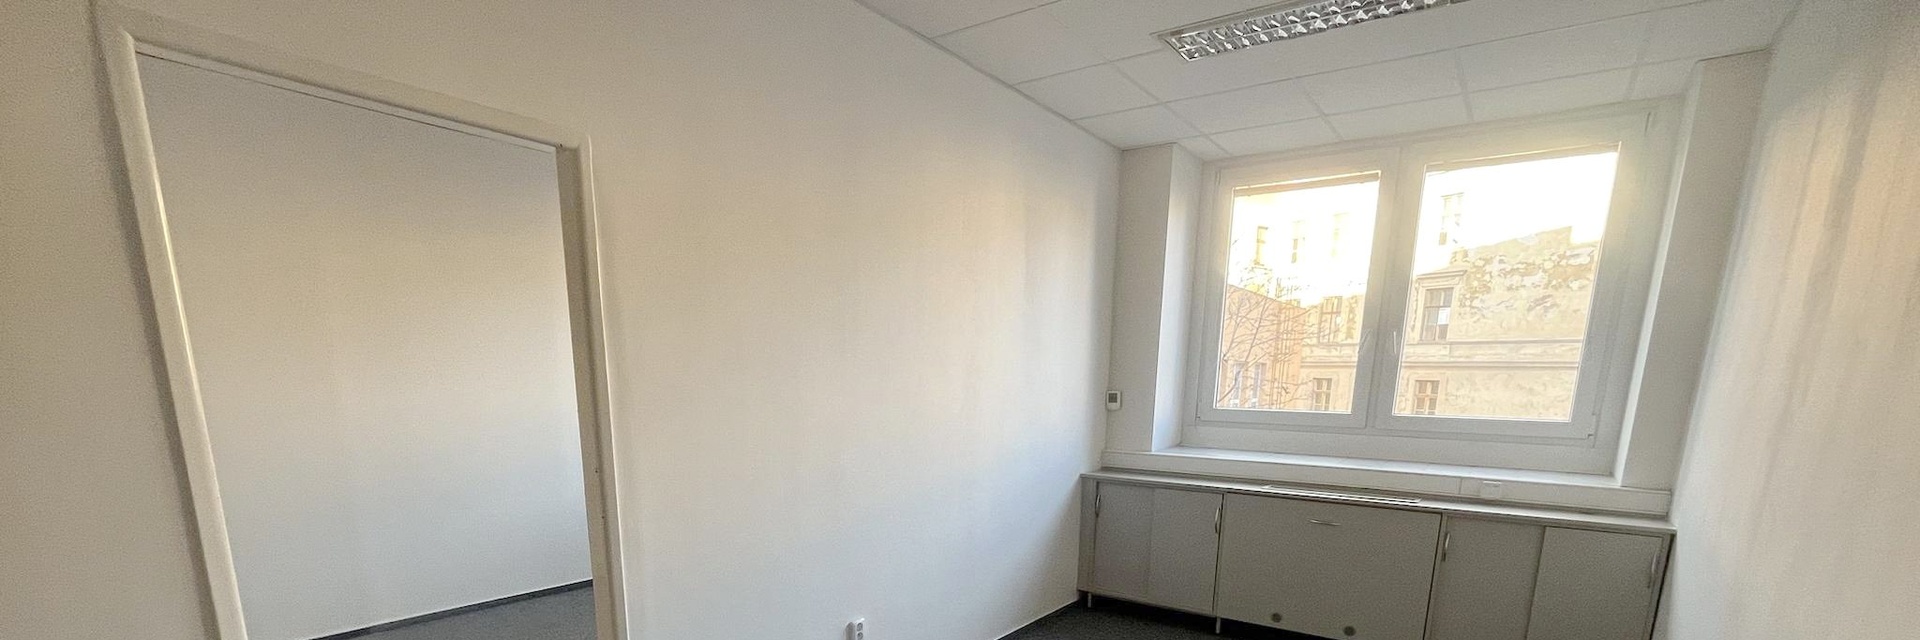 Pronájem klimatizovaného kancelářského celku 36 m², v centru Brna, ul. Milady Horákové